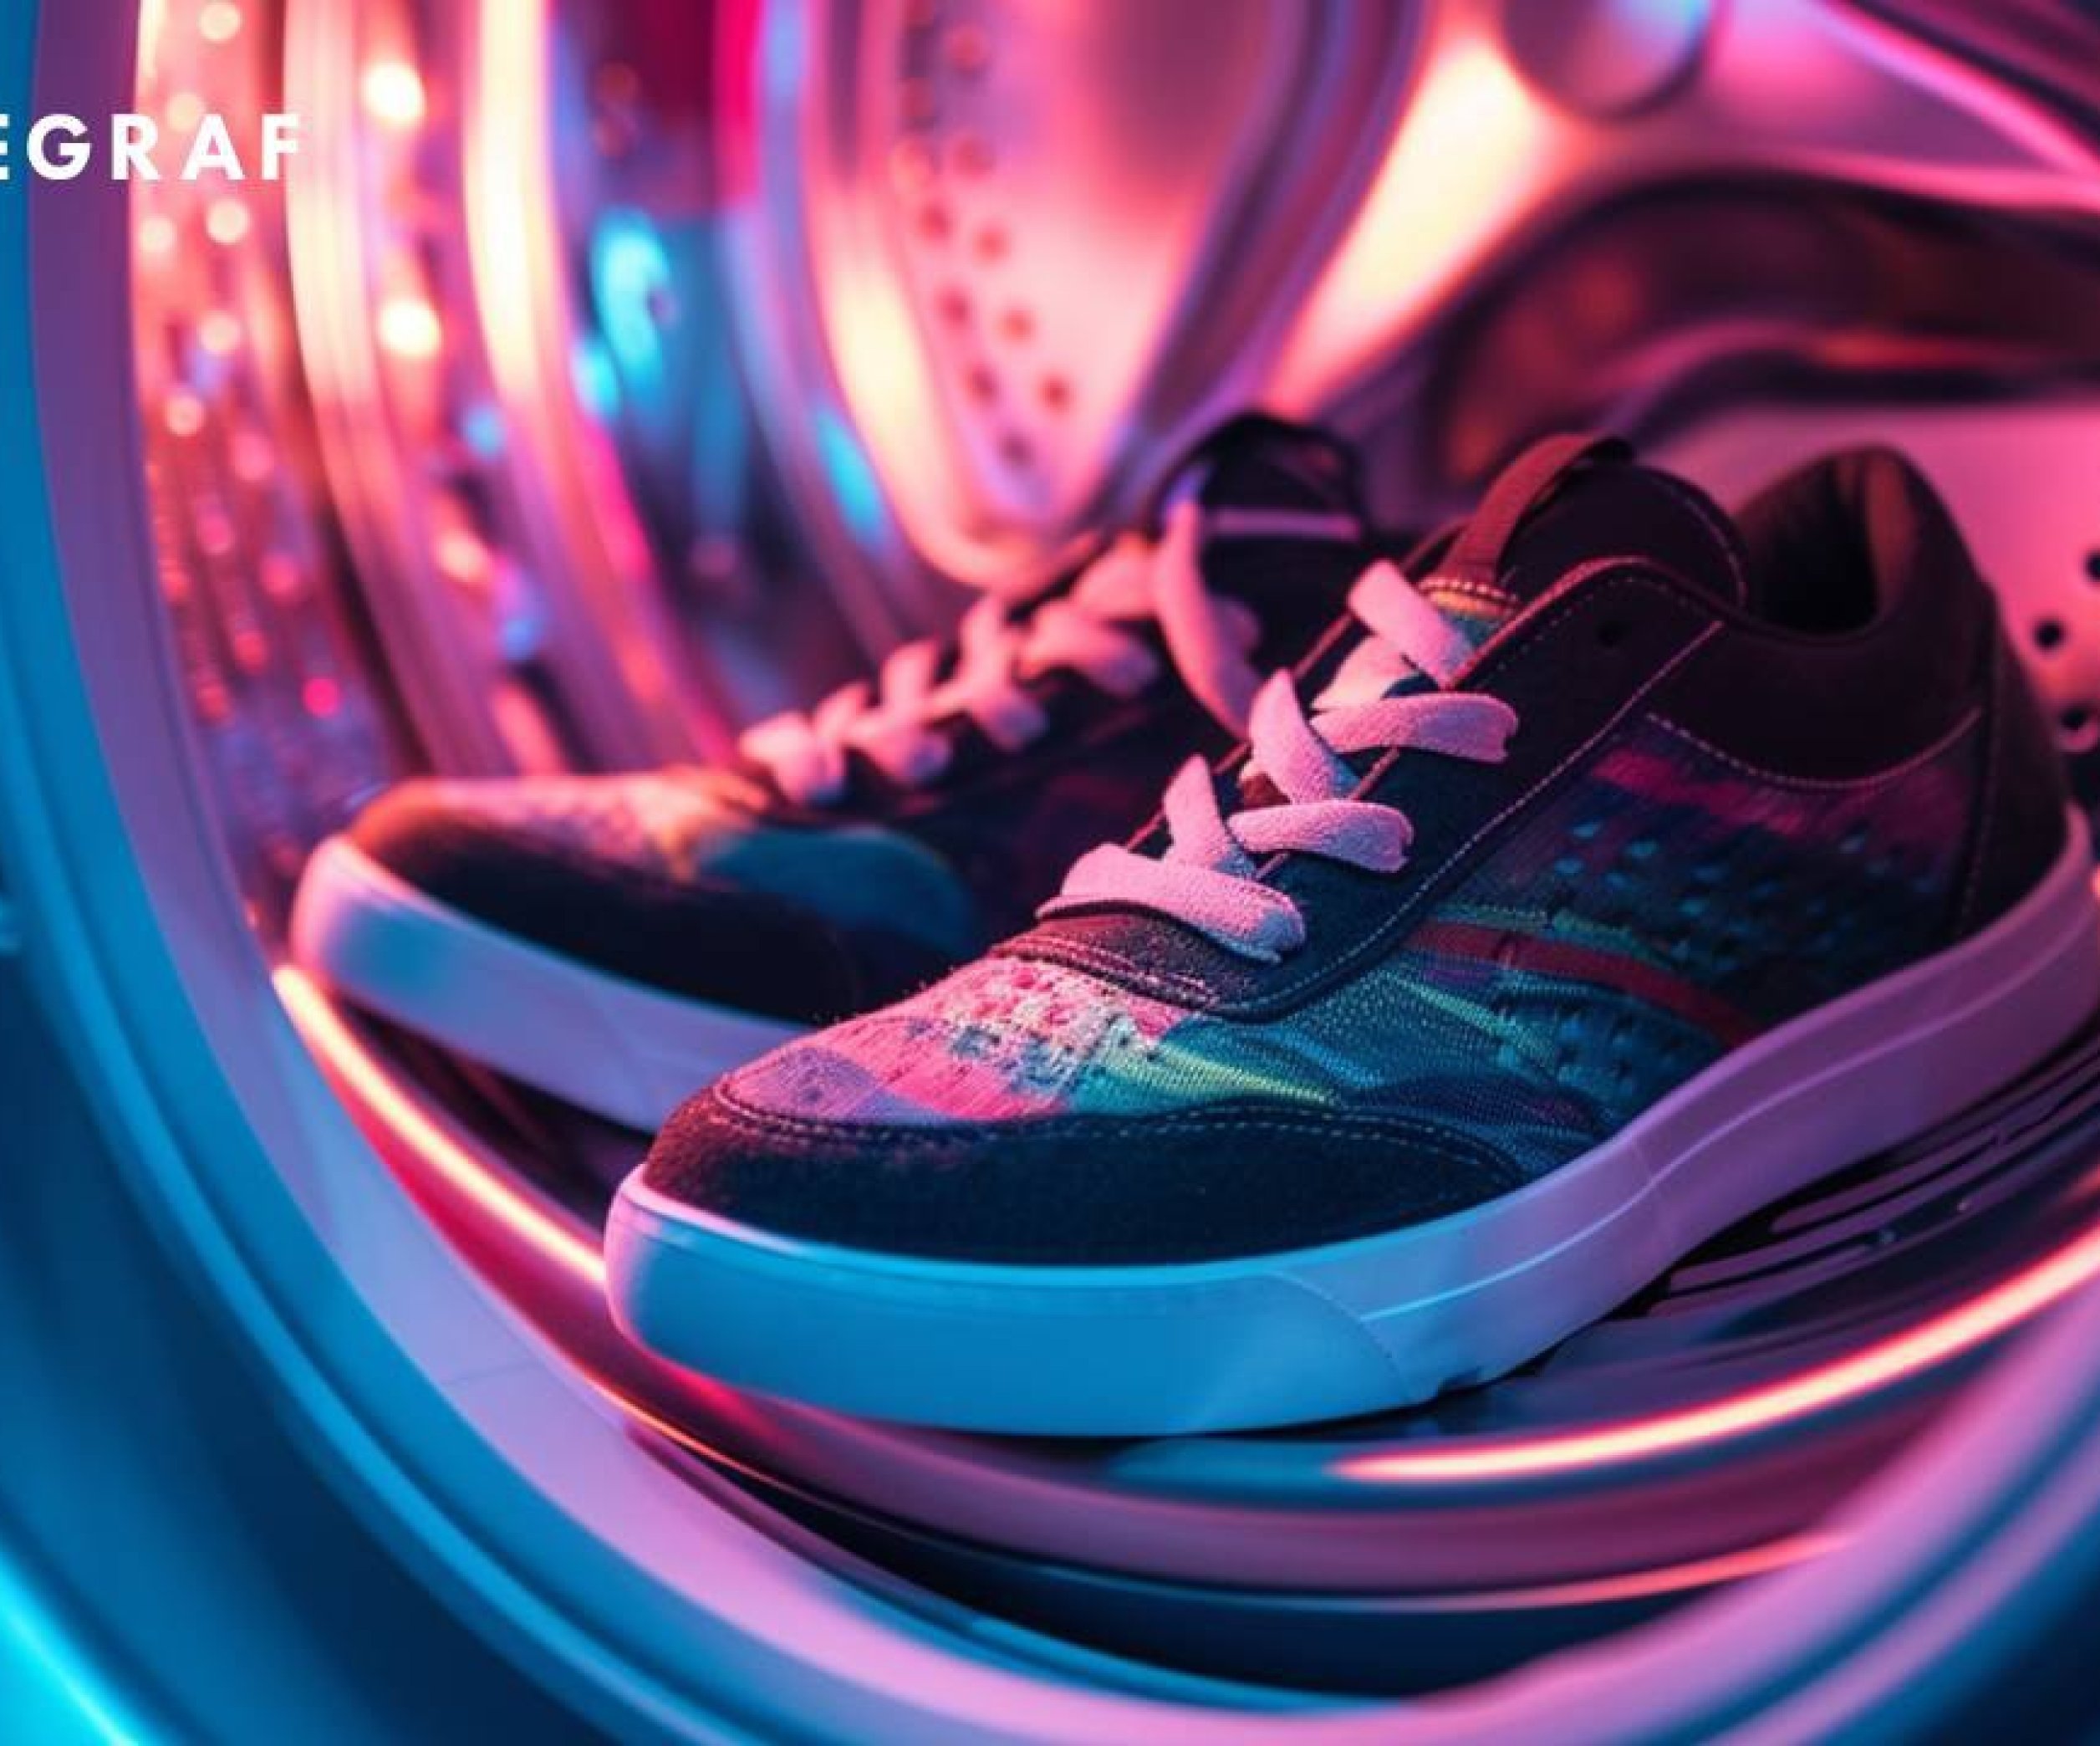 Как стирать кроссовки в стиральной машине автомат - Советы как правильно постирать